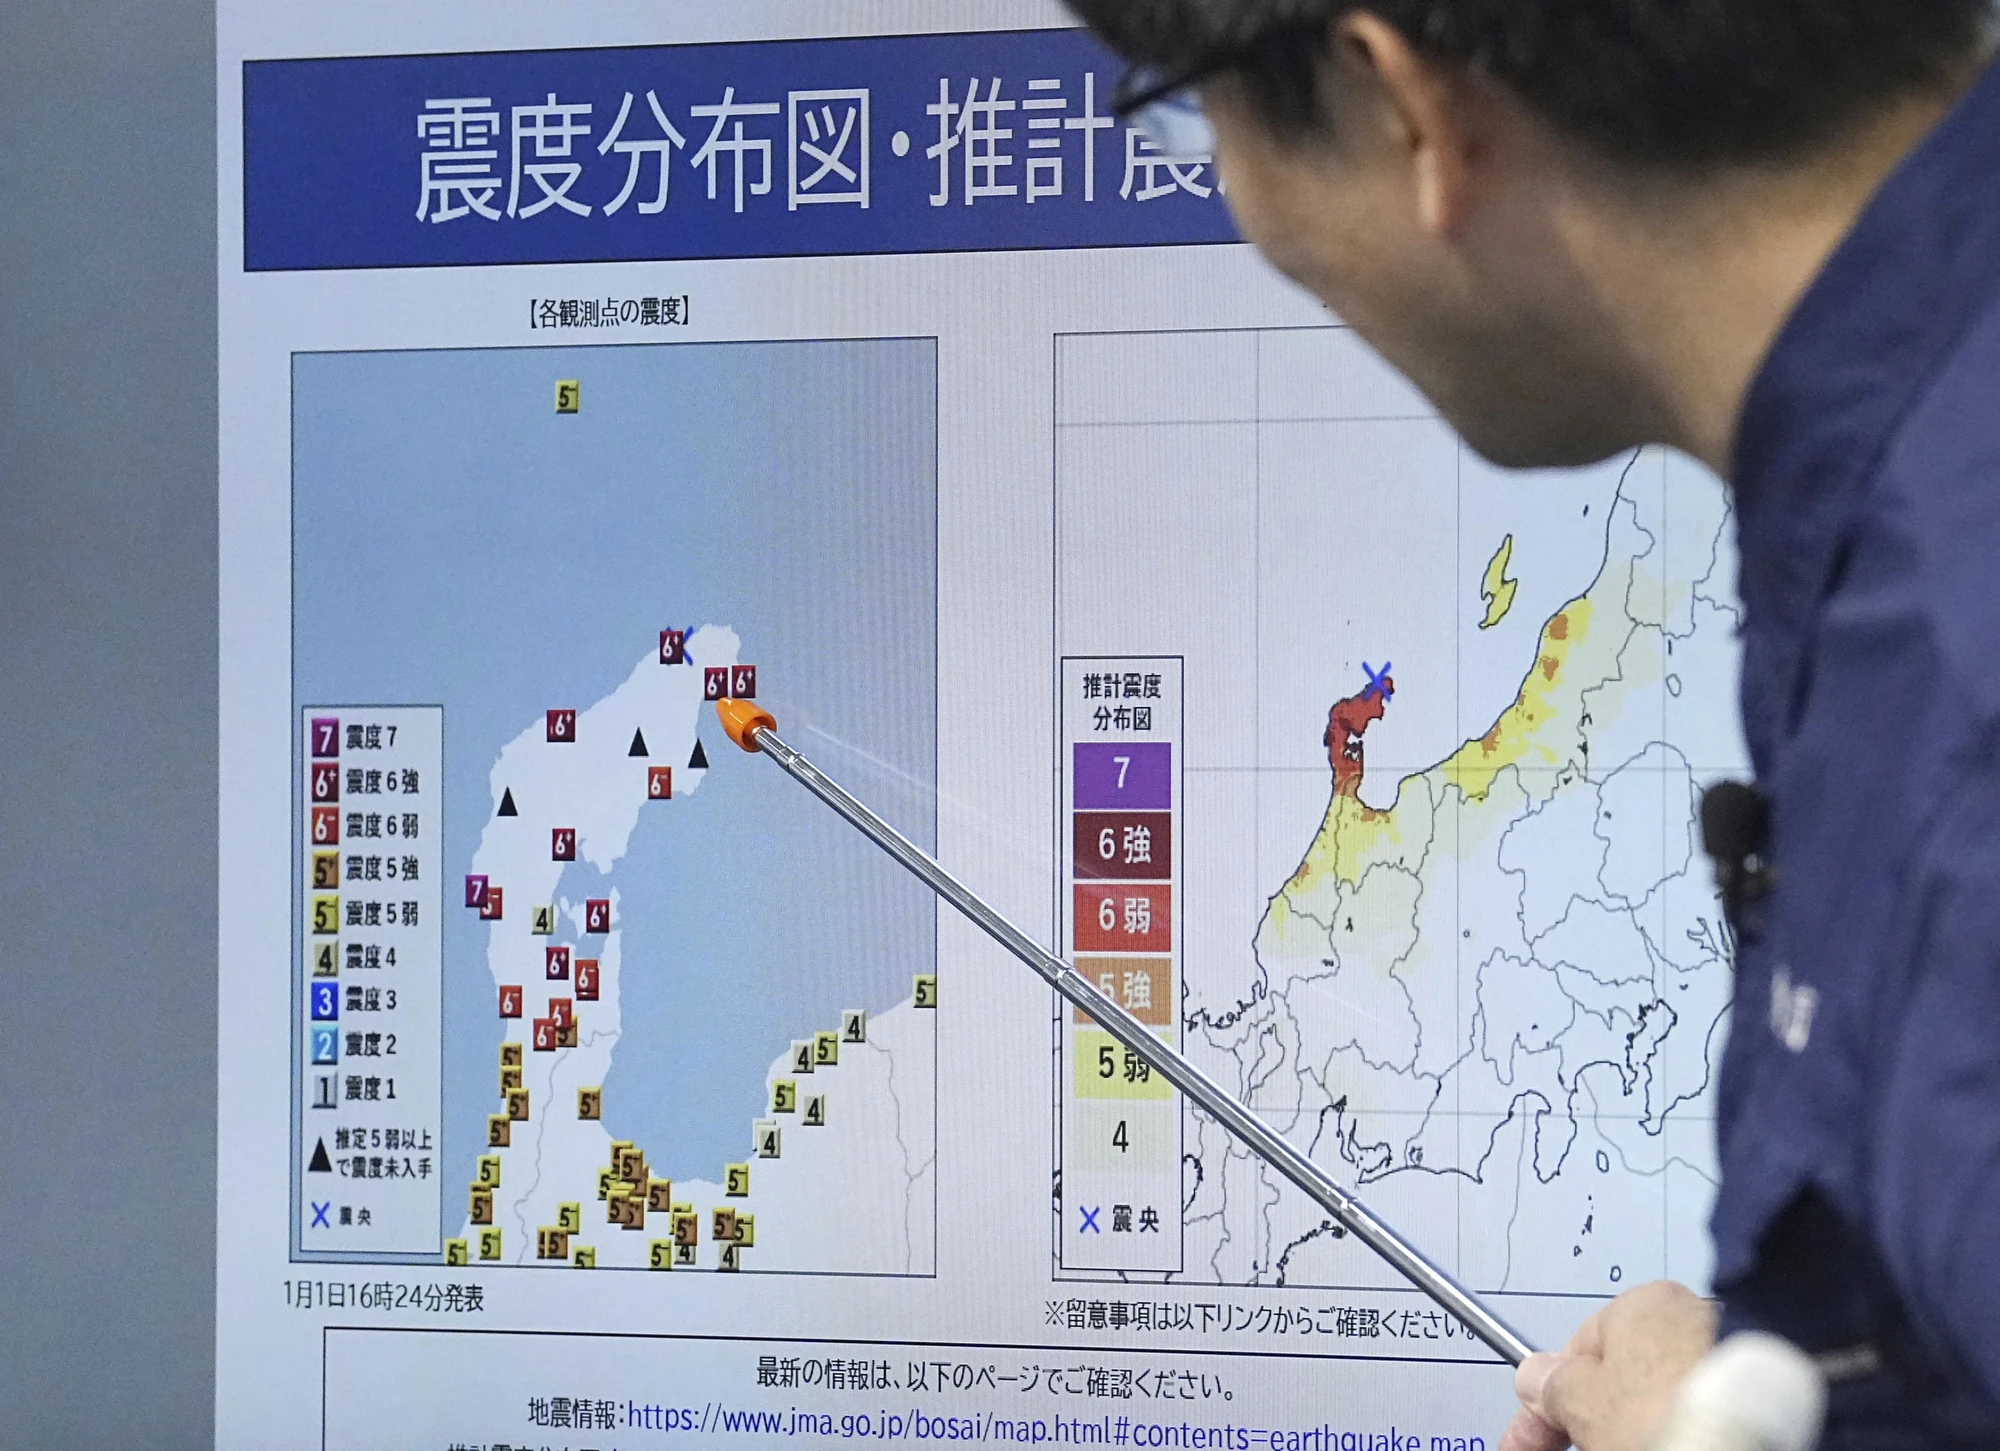 [Ảnh] Người dân Nhật Bản sơ tán sau cảnh báo sóng thần diện rộng ảnh 1